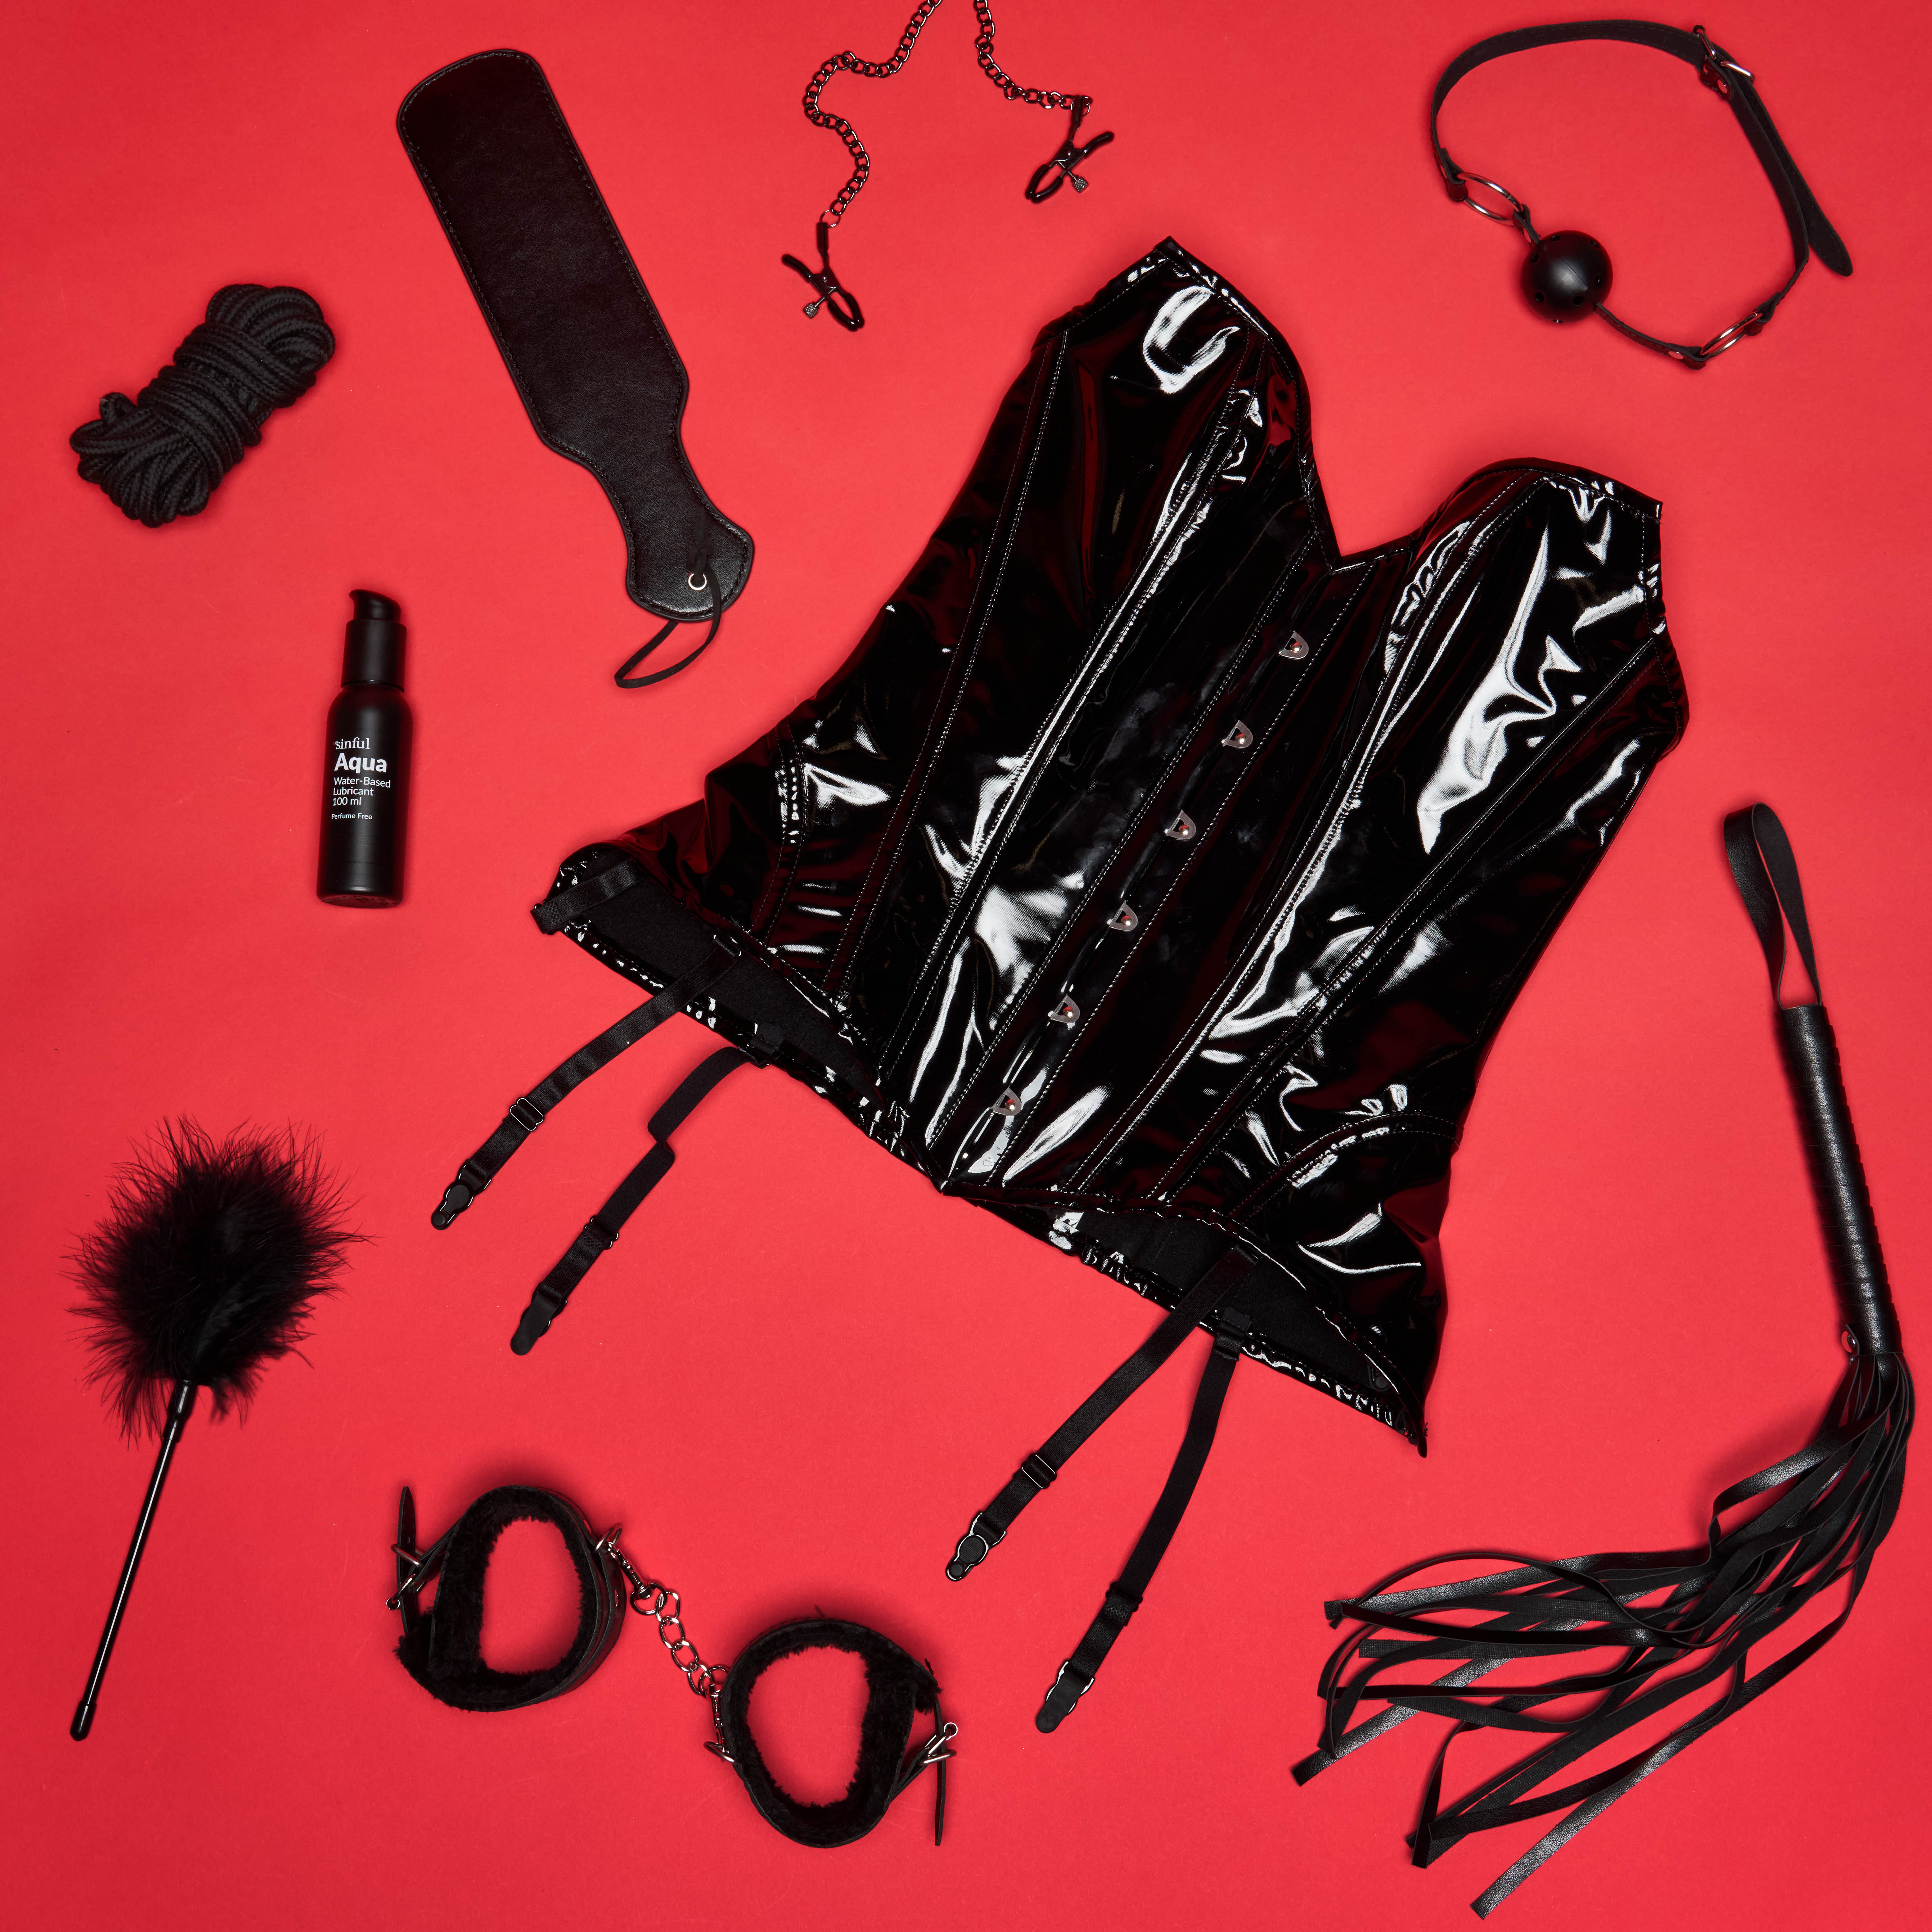 et svart korsett med sexleketøy og glidemiddel på rød bakgrunn